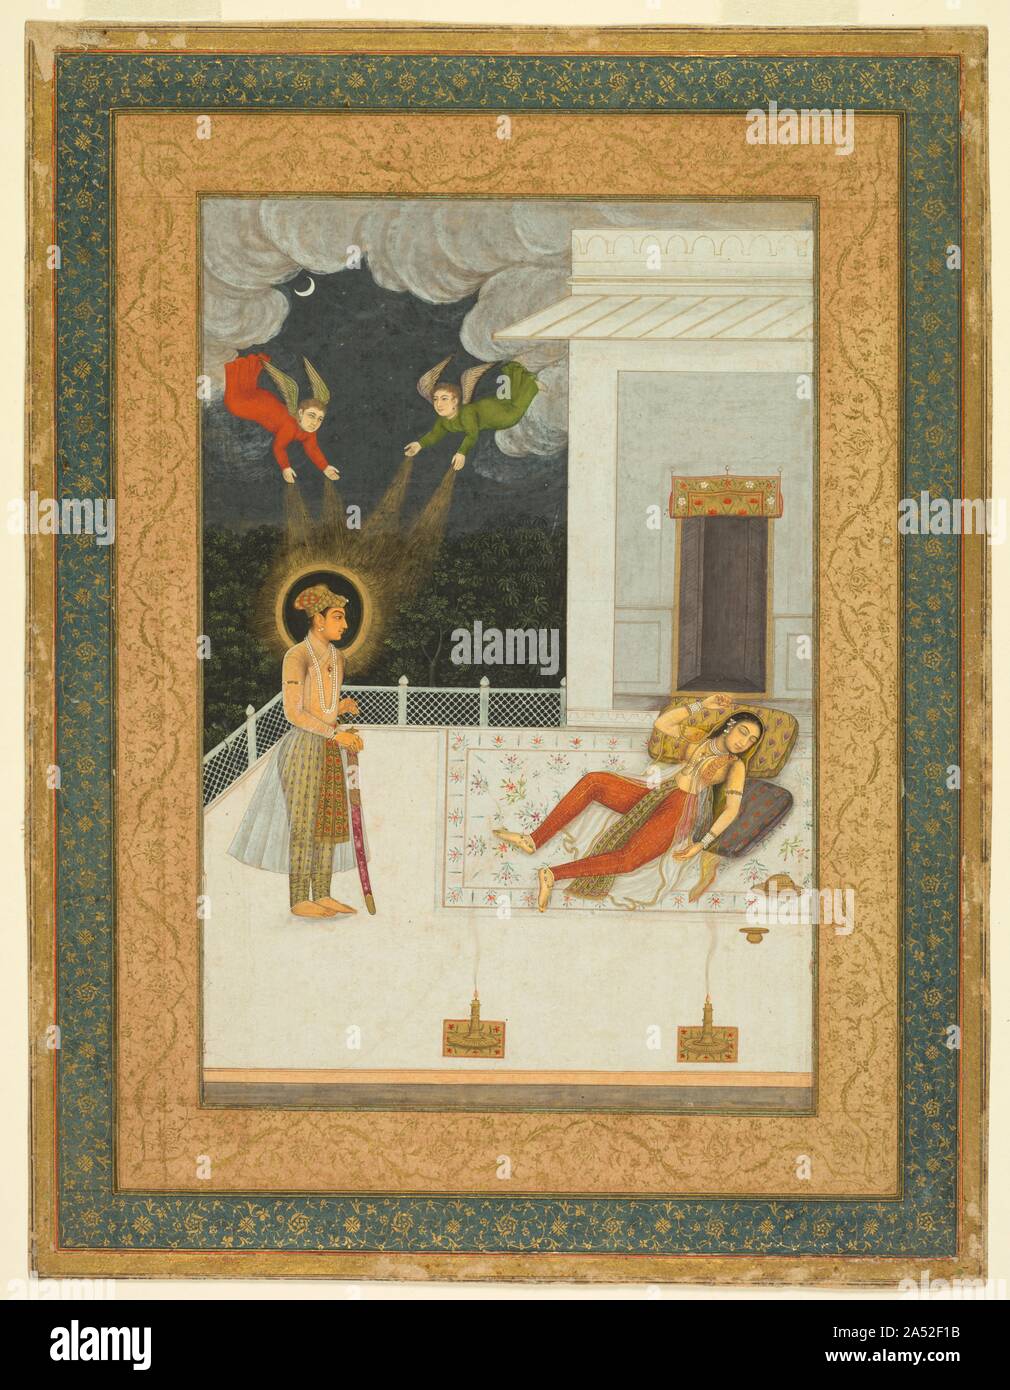 Der Traum von der Zulaykha von der Amber Album, C. 1670. In den islamischen Texten, wie sie in der Hebräischen und der christlichen Alten Testament Traditionen, Zulaykha ist die namenlose Frau des Potiphar, einem wohlhabenden Ägyptischen. Diese Szene ist von einem populären Persische Gedicht erzählt die Geschichte von Josef und Zulaykha als mystische Romanze, und beschreibt ihre visionäre Träume von einem schönen Geliebten. Auf diesem Gemälde sehen wir die luxuriös gekleidet Zulaykha schlafend auf einer Terrasse liegend auf verzierten Kissen als Vision der Liebe, Joseph, erscheint vor ihr. Er ist durch strahlendes Licht beleuchtet, die von Engeln, die sich aus den dunklen nig Cast Stockfoto